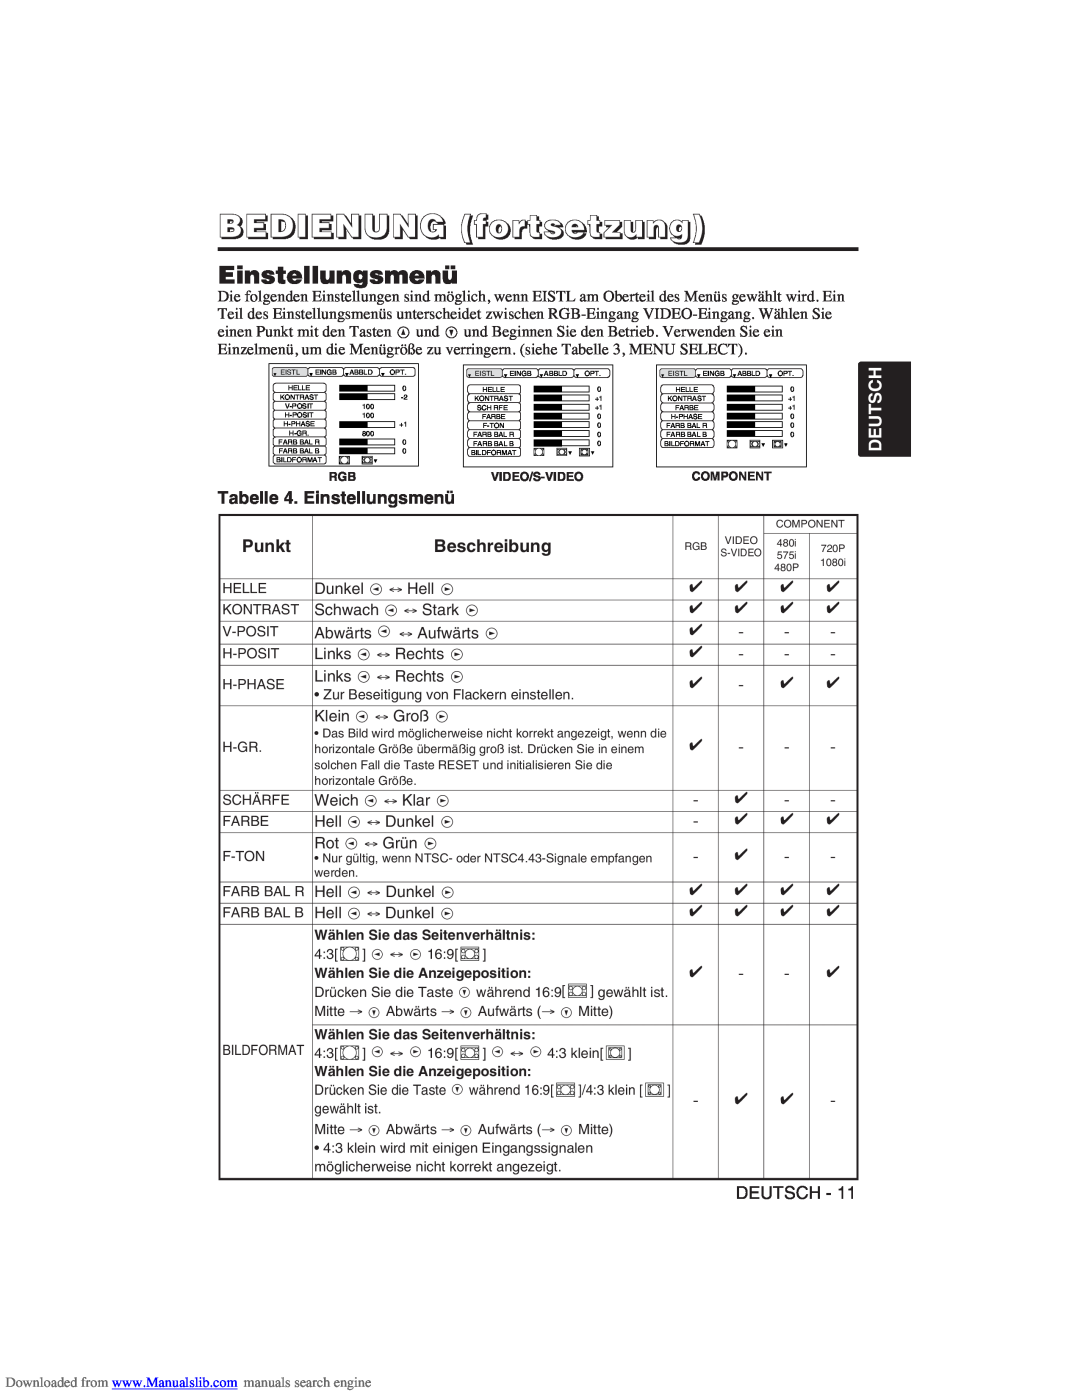 Hitachi CP-X275W user manual Tabelle 4. Einstellungsmenü, BEDIENUNG fortsetzung, Deutsch, Punkt, Beschreibung 